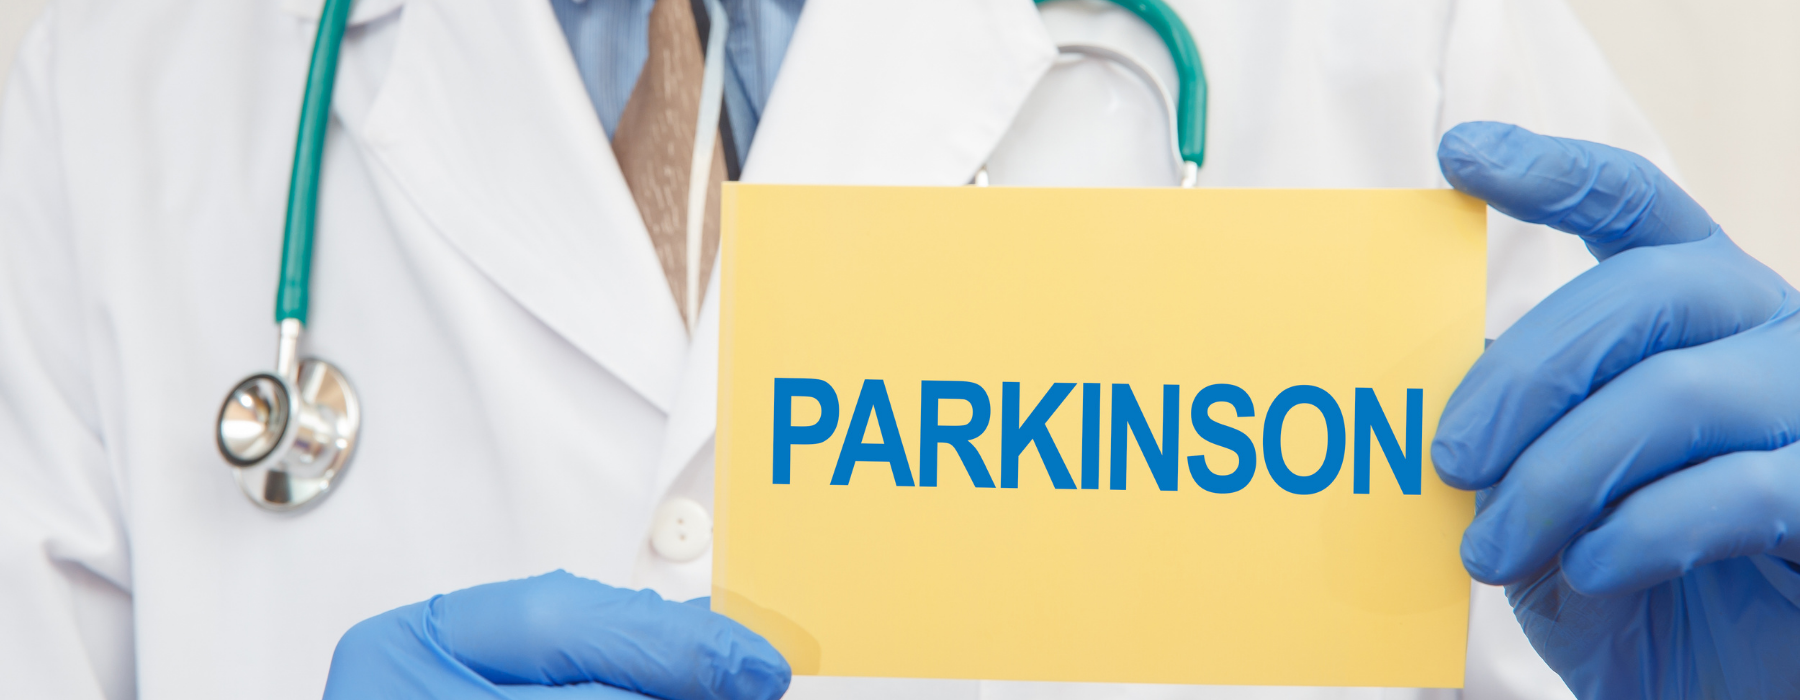 Parkinson: exames de imagem auxiliam no diagnóstico?